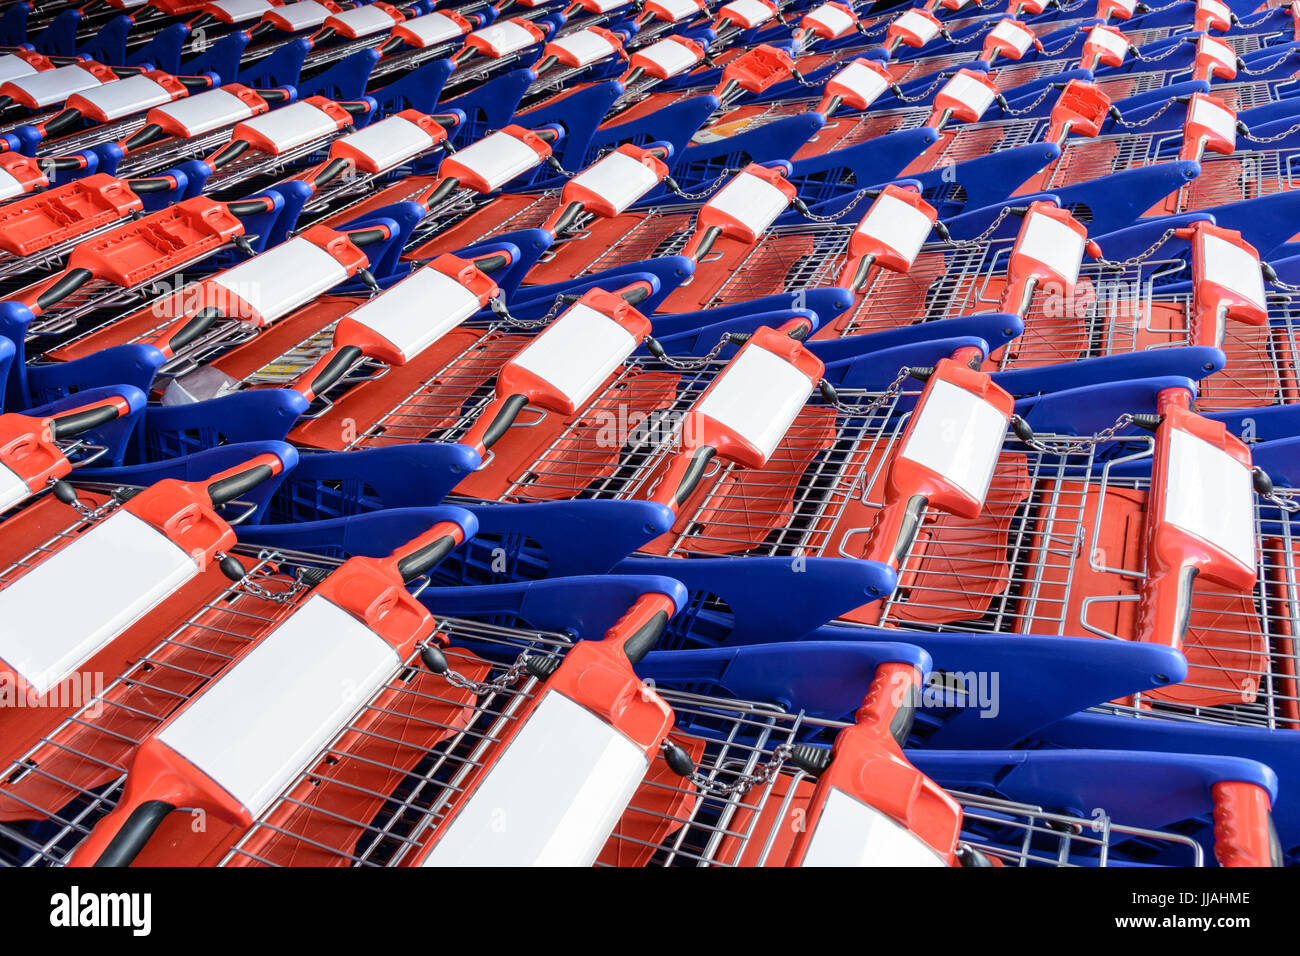 Carritos de compras rojos y azules anidados entre sí en varias líneas. Foto de stock